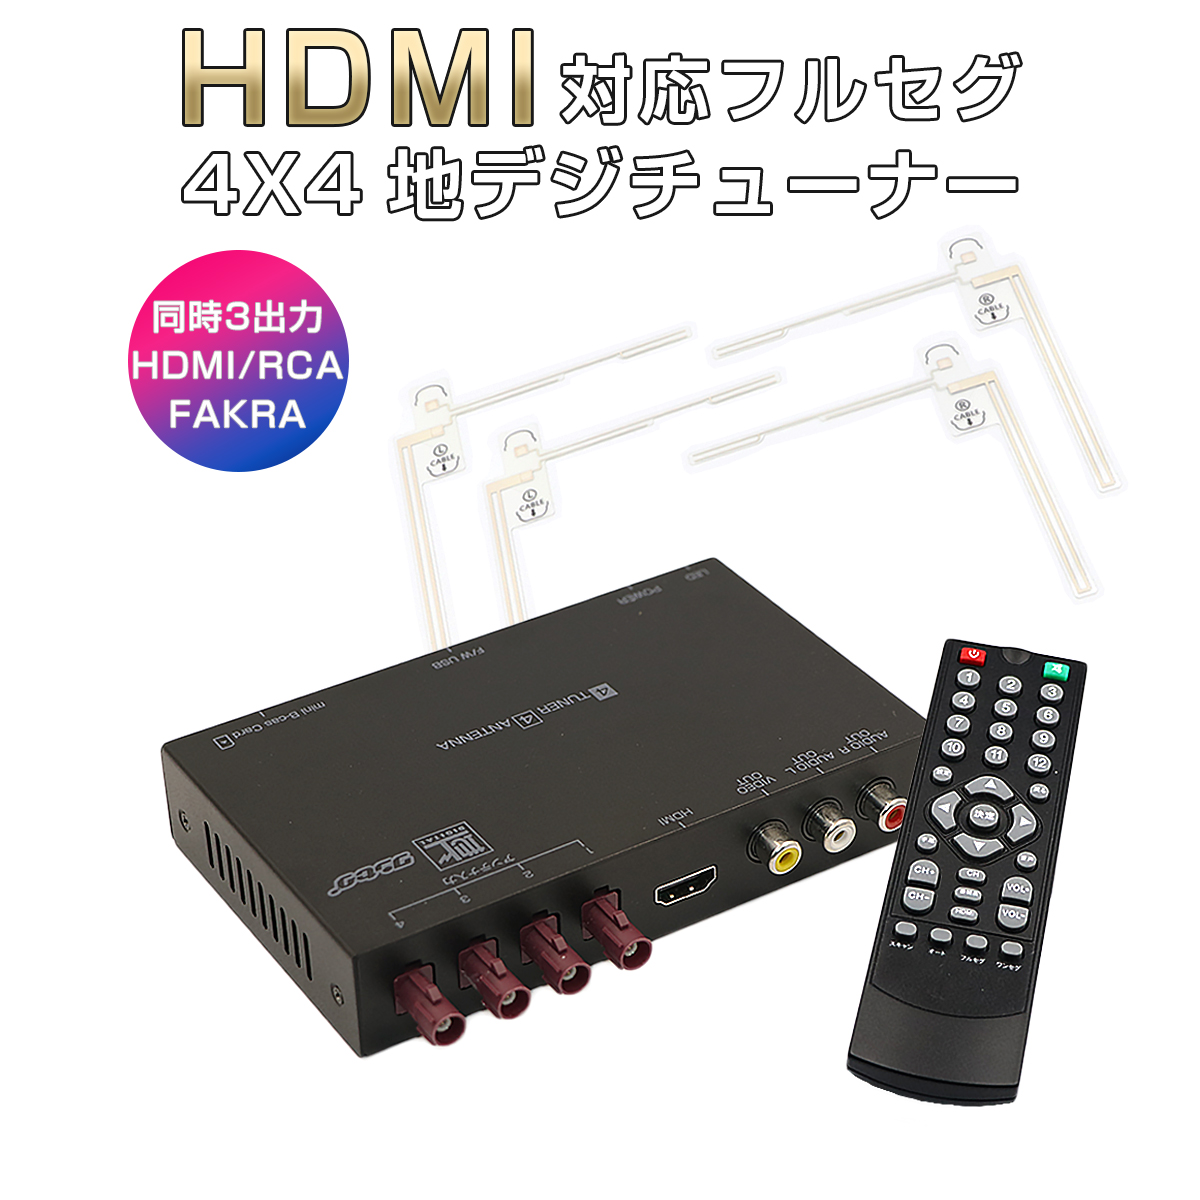 卸売B2B 高精細度 地デジチューナー FAKRAコネクター フルセグチューナー HDMI 4x4 4チューナー 4アンテナ 高性能 TV 車載 AV マルチ出力 12V/24V対応 miniB-CASカード付き 宅配便送料無料 6ヶ月保証 K&M